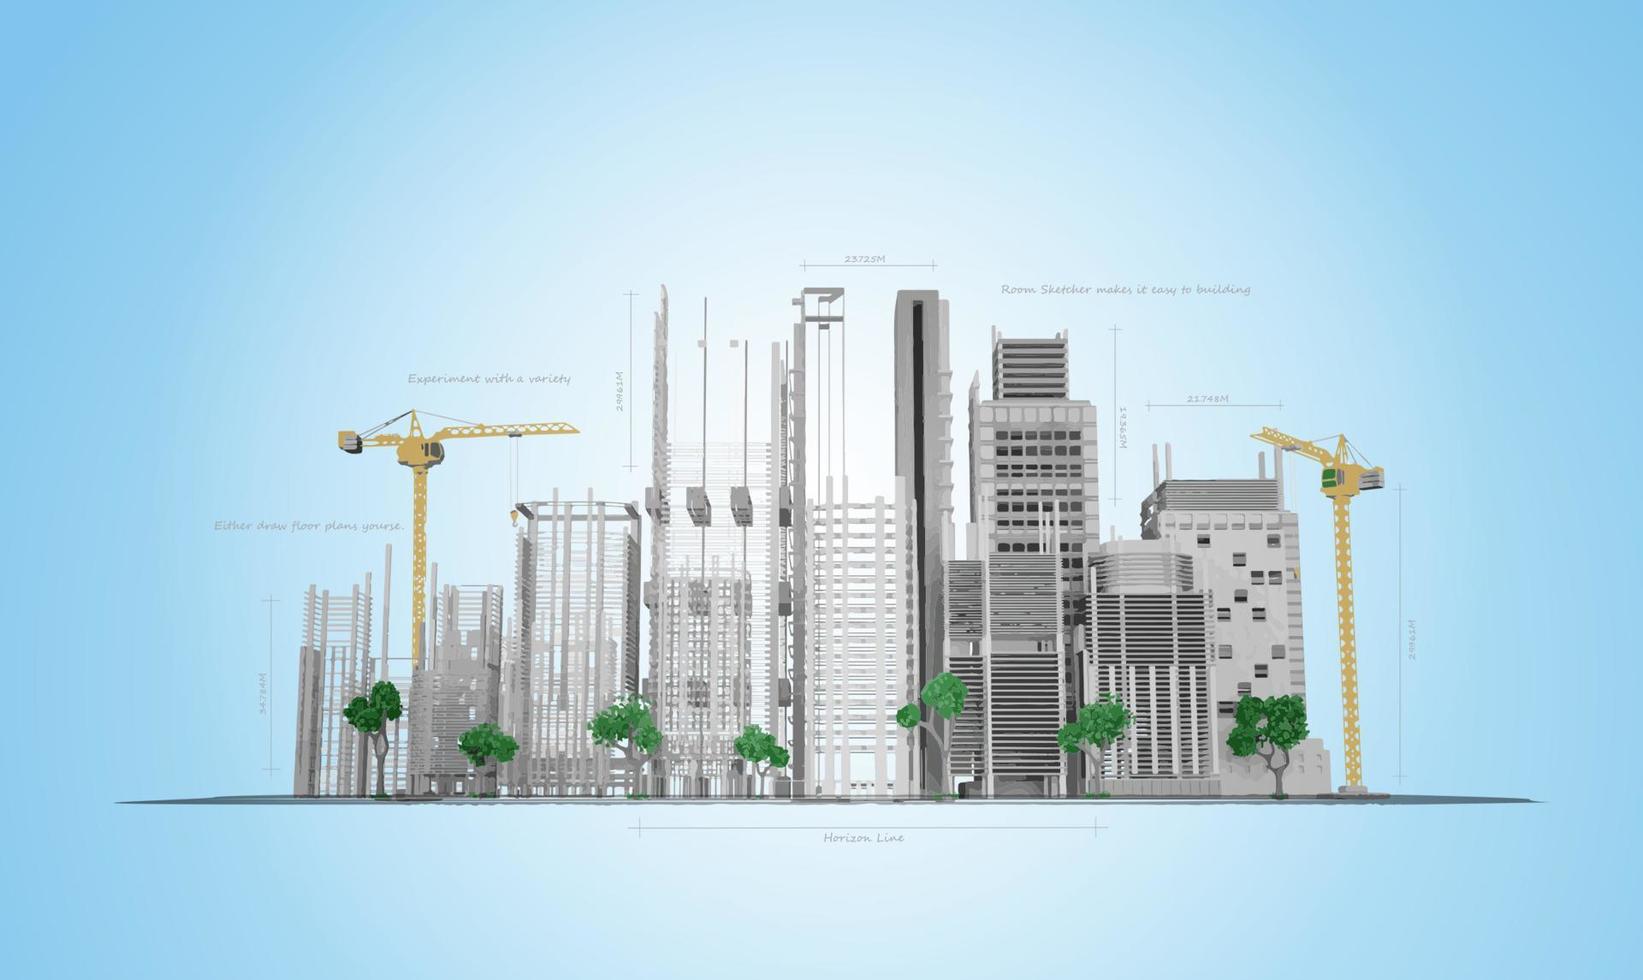 Wolkenkratzer im Bauprozess auf den Blaupausen. zeichnung city.vector illustration vektor